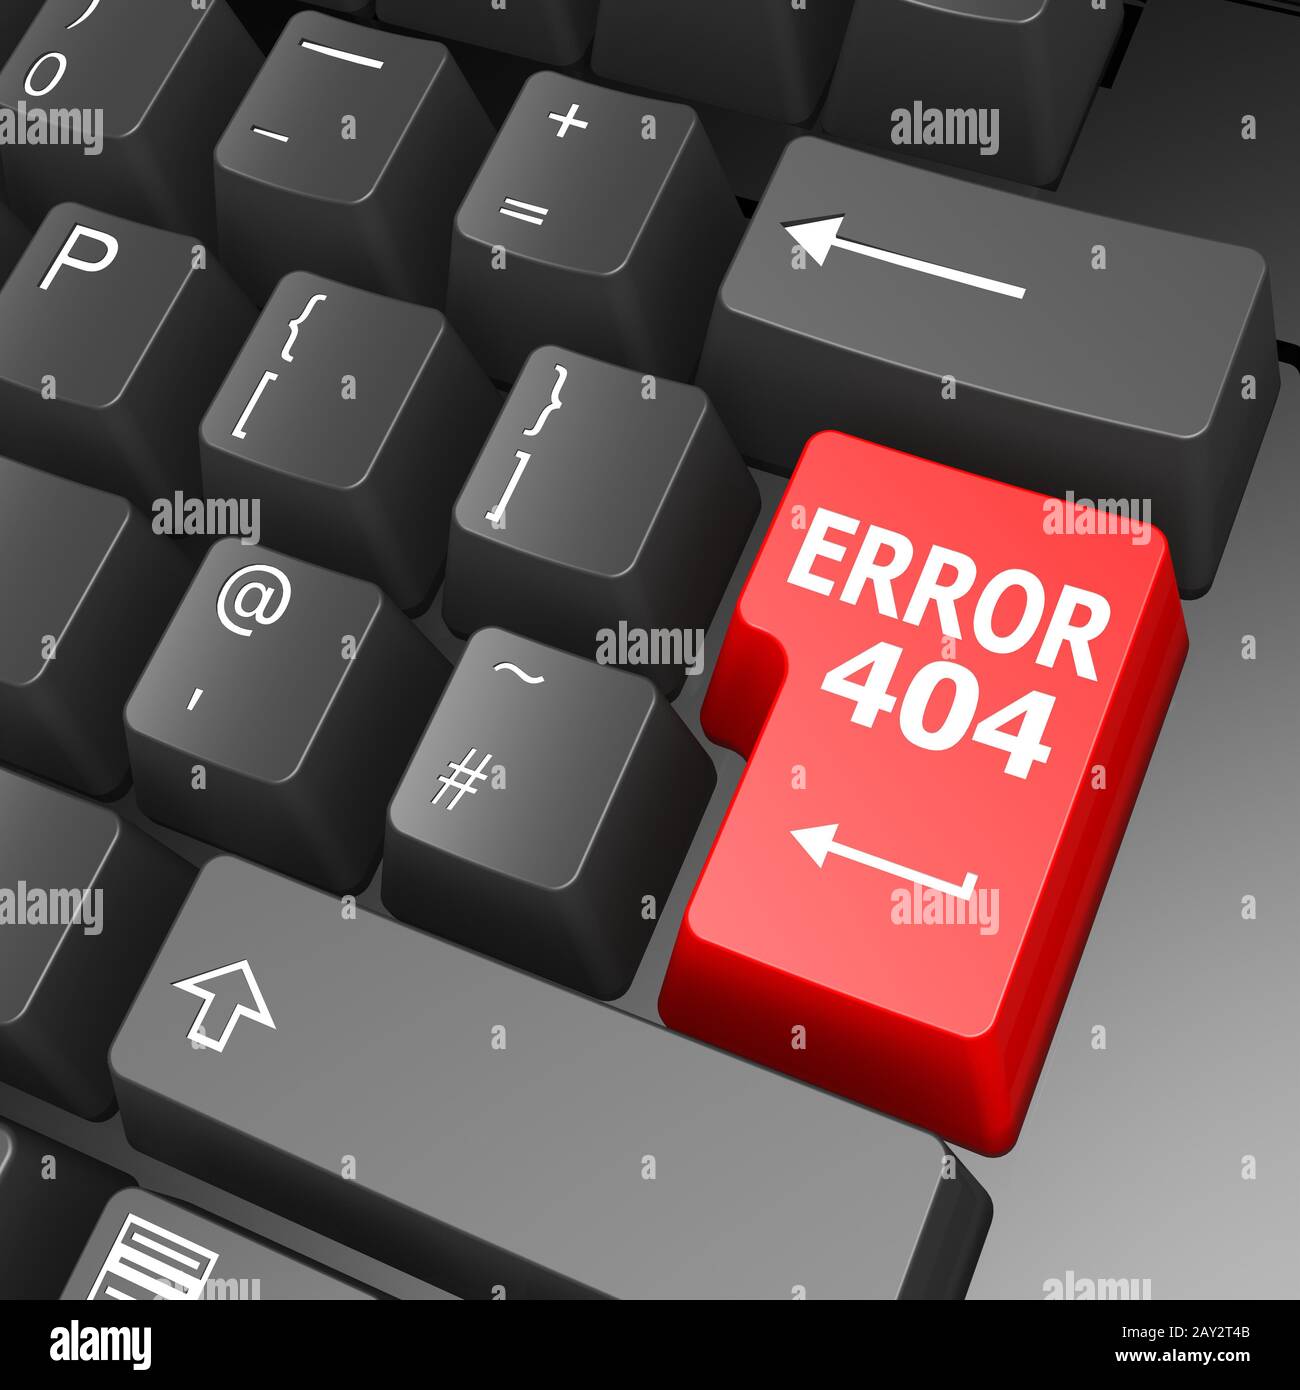 404 Erreur de touche sur un clavier d'ordinateur Photo Stock - Alamy